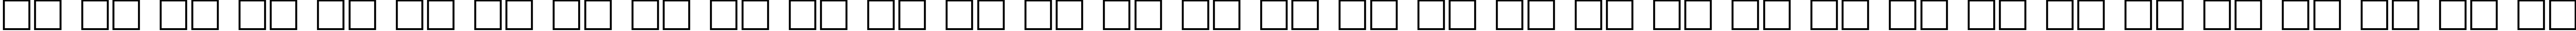 Пример написания русского алфавита шрифтом Heraldic